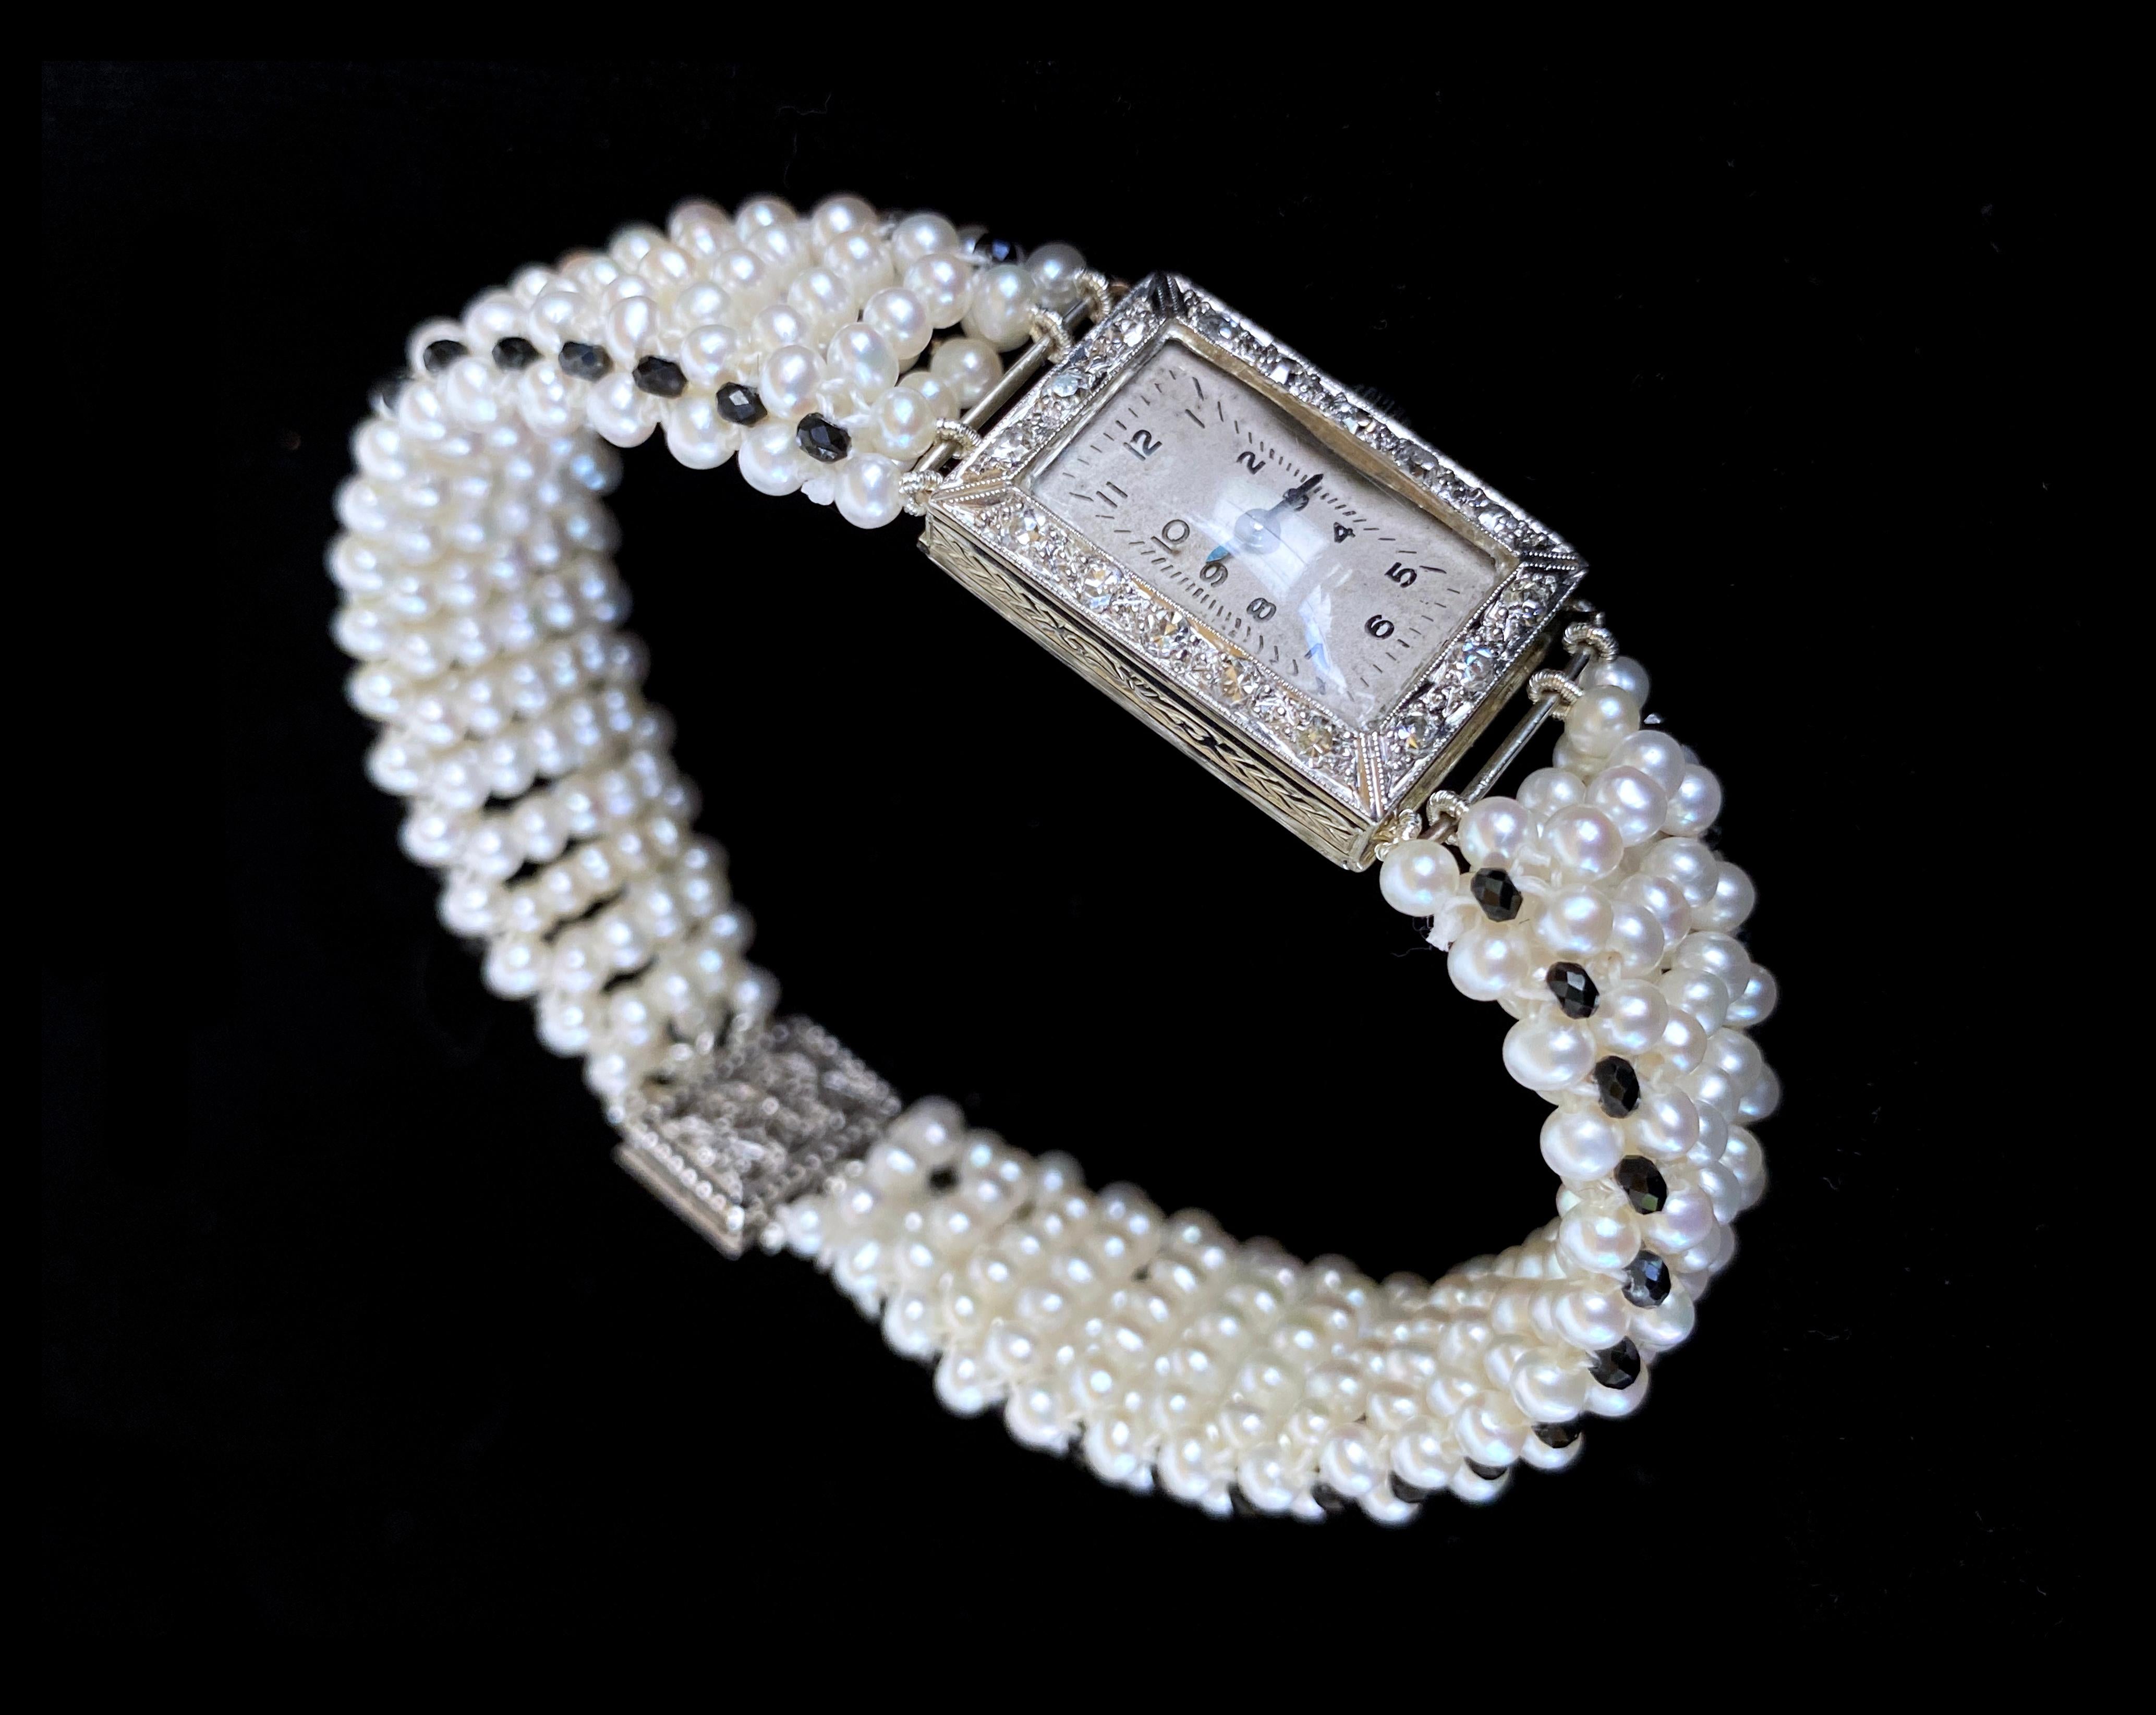 Pièce unique de Marina J. Ce bracelet unique présente une montre manuelle vintage en or blanc 18 carats incrustée de diamants, transformée en un magnifique bracelet plat en perles. Cette pièce présente de magnifiques perles de rocaille aux douces